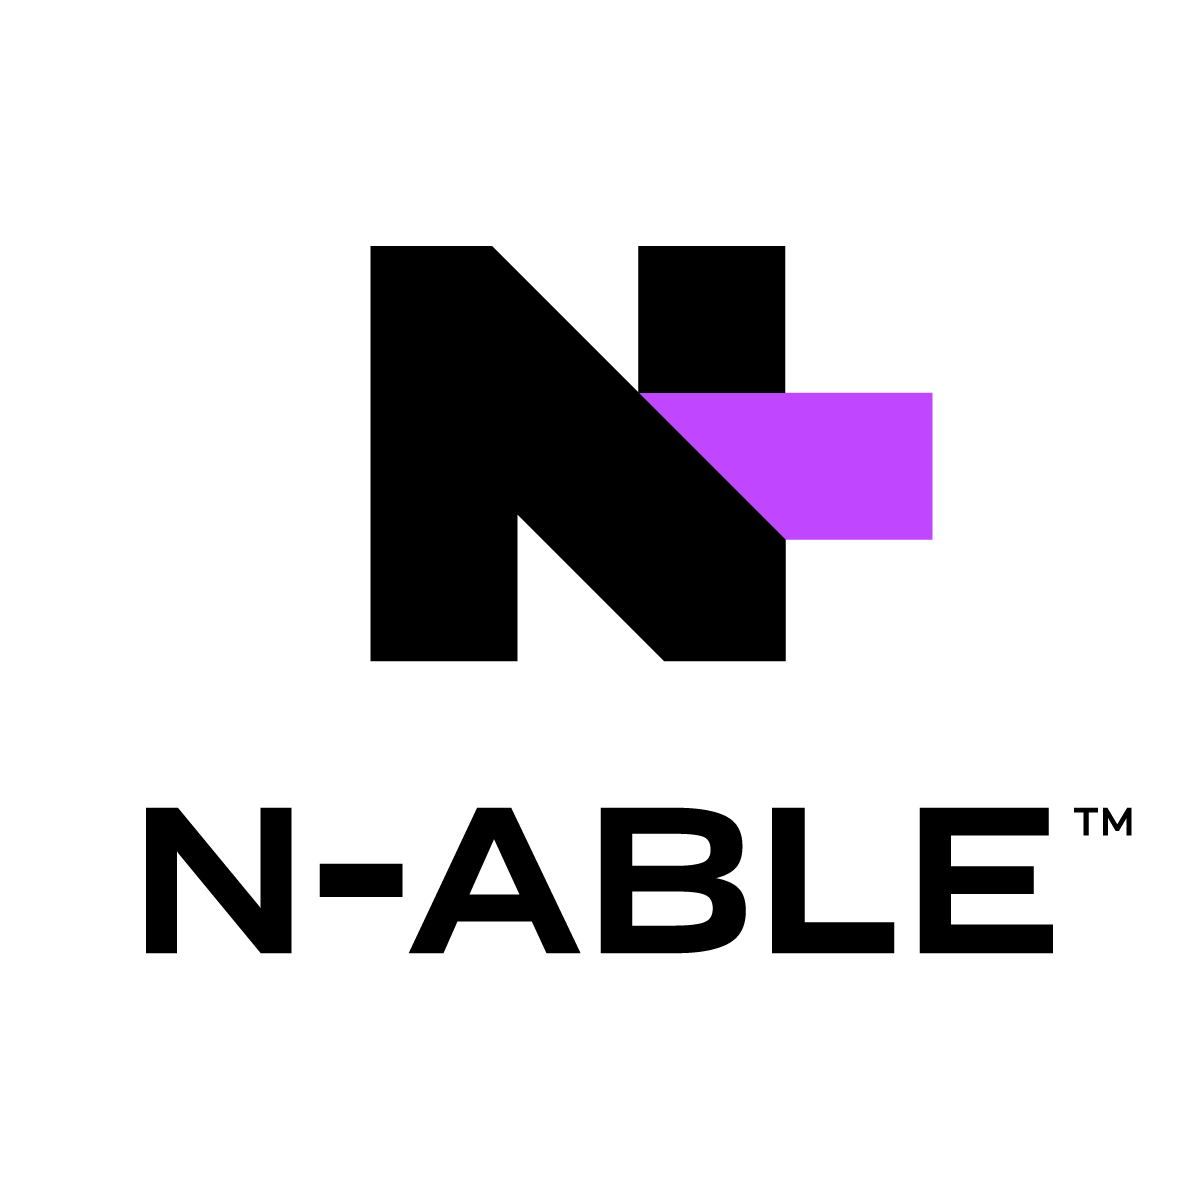 N-able Logo